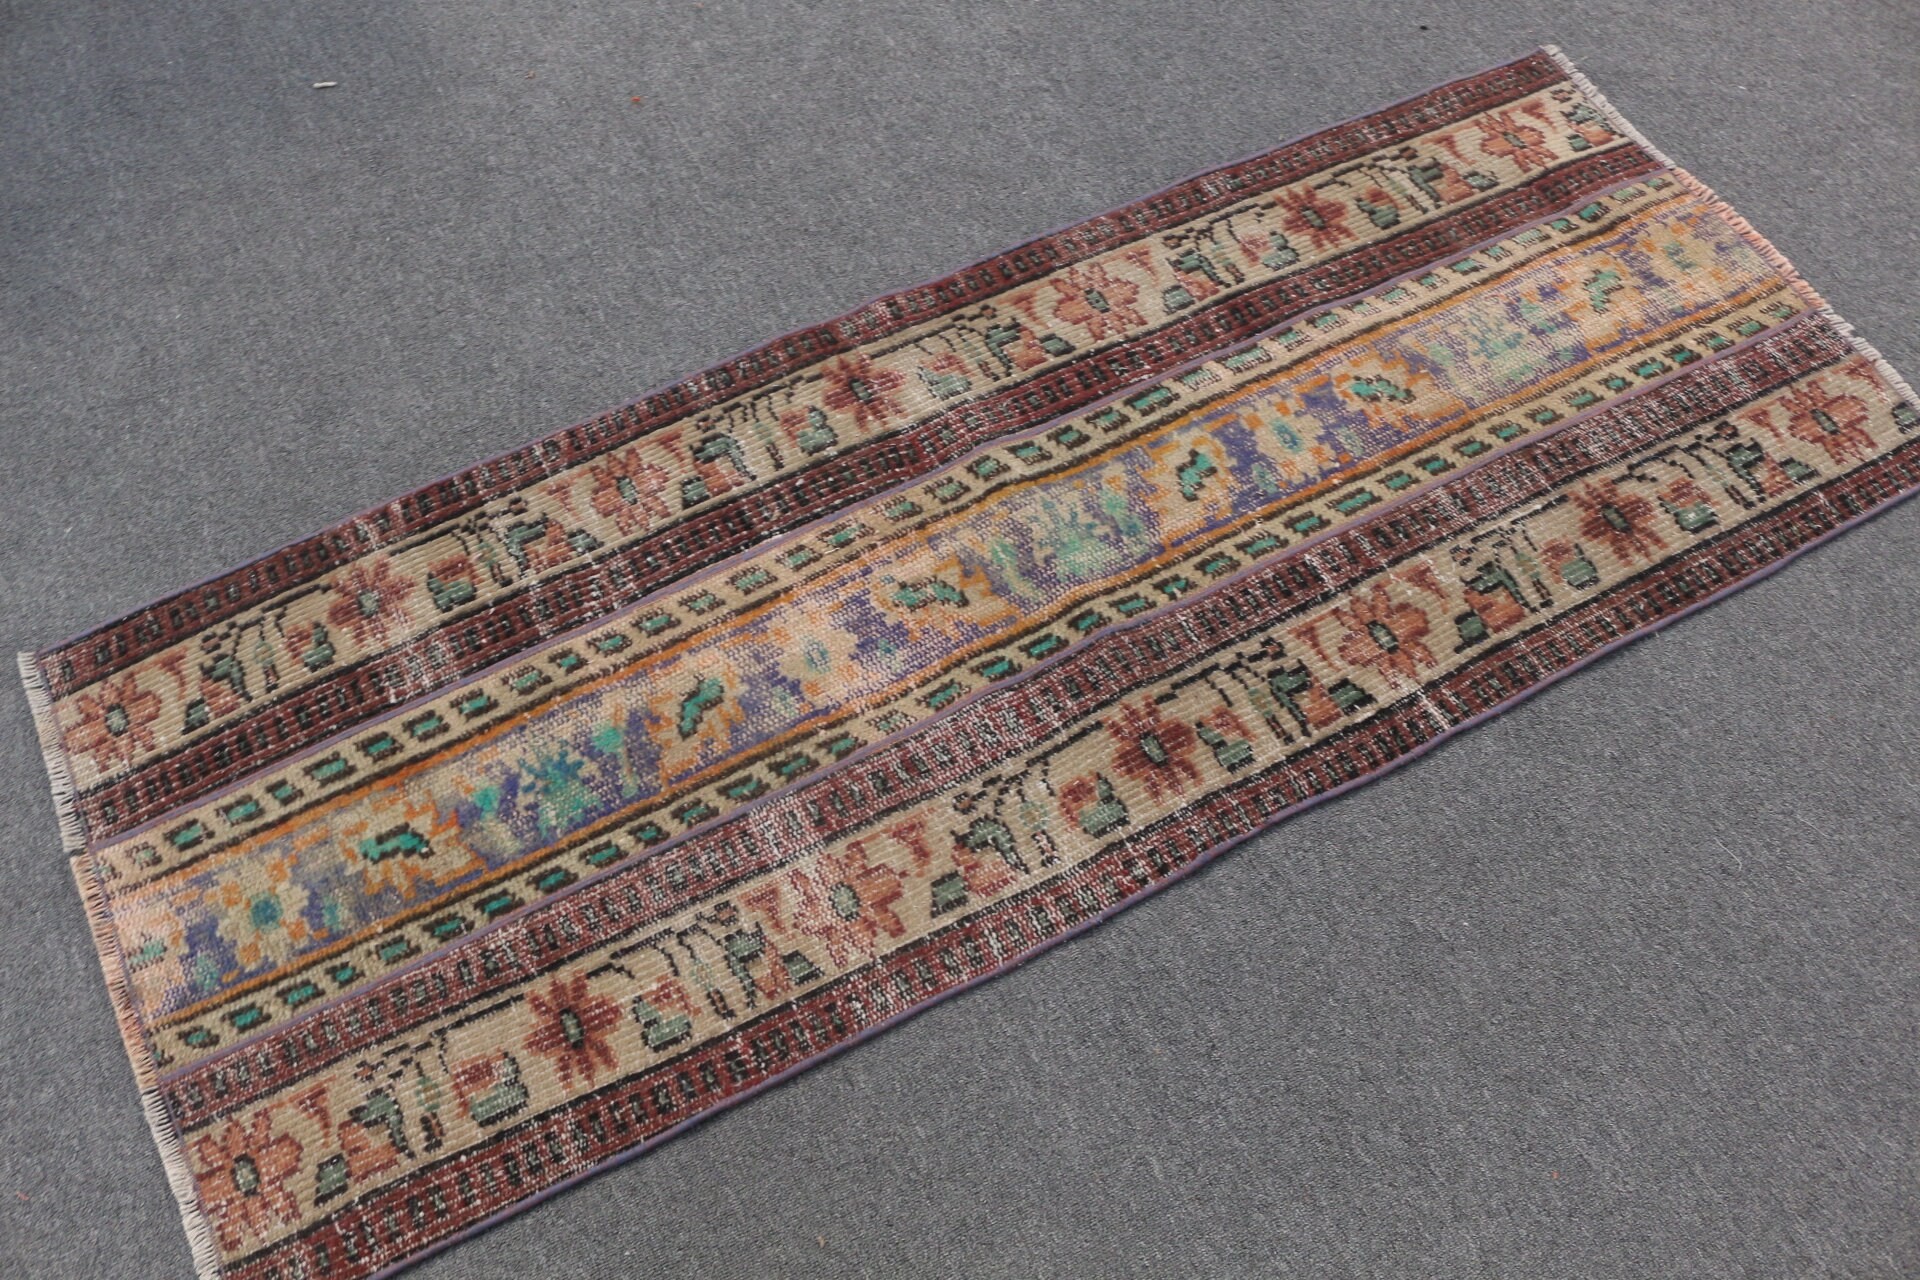 Vintage Rug, 2.1x5.5 ft Runner Rugs, Outdoor Rug, Anatolian Rug, Turkish Rug, Oriental Rug, Orange Bedroom Rug, Rugs for Stair, Hallway Rug